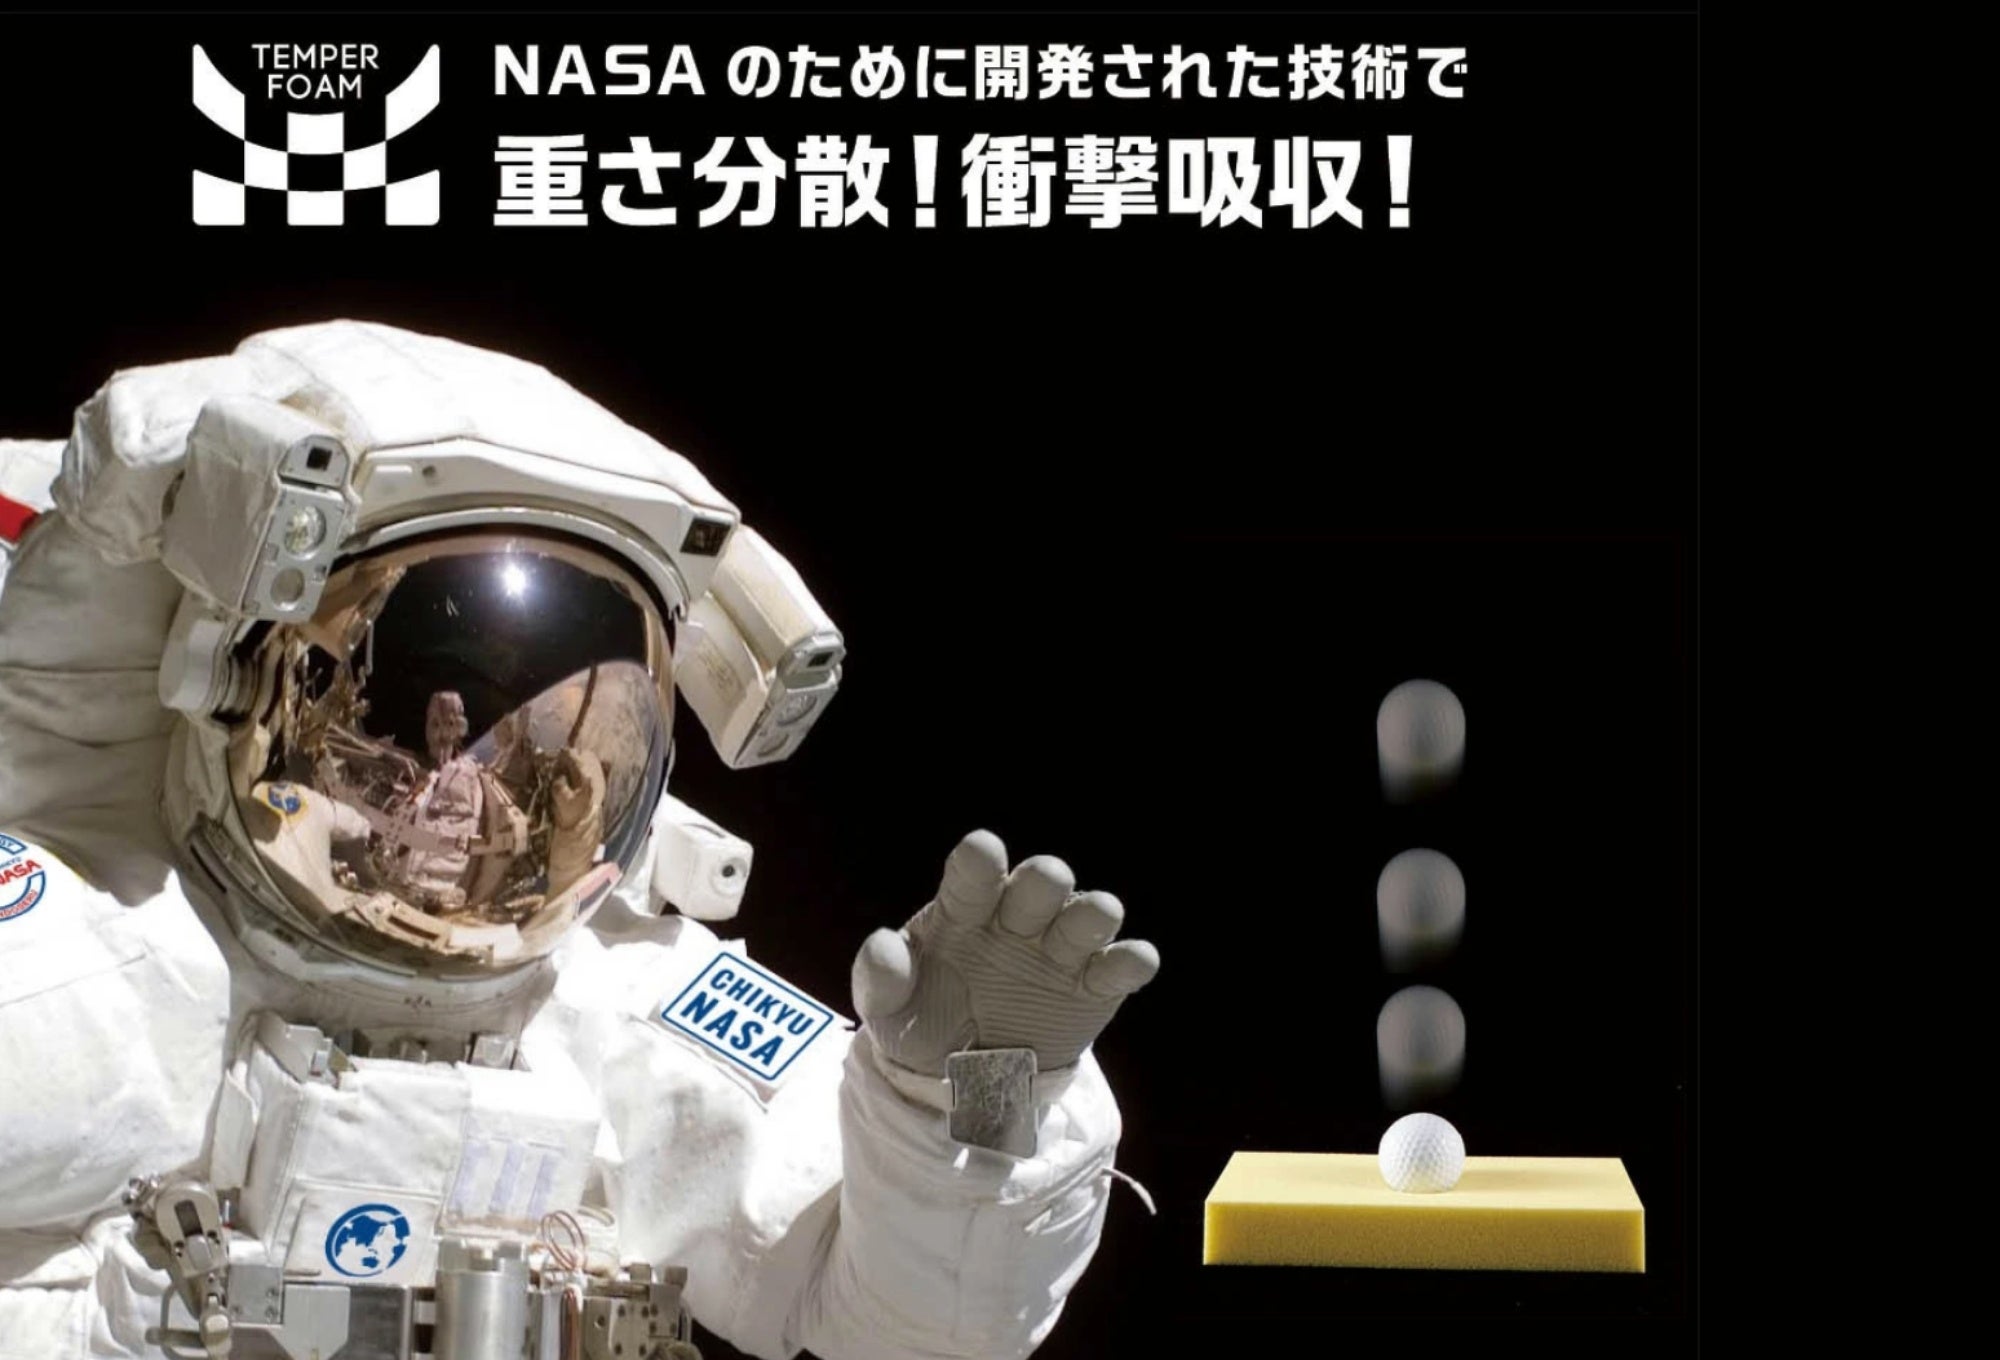 【青森】TSUTAYA八戸ニュータウン店にて「地球NASAランドセル®受注会」を開催いたします。